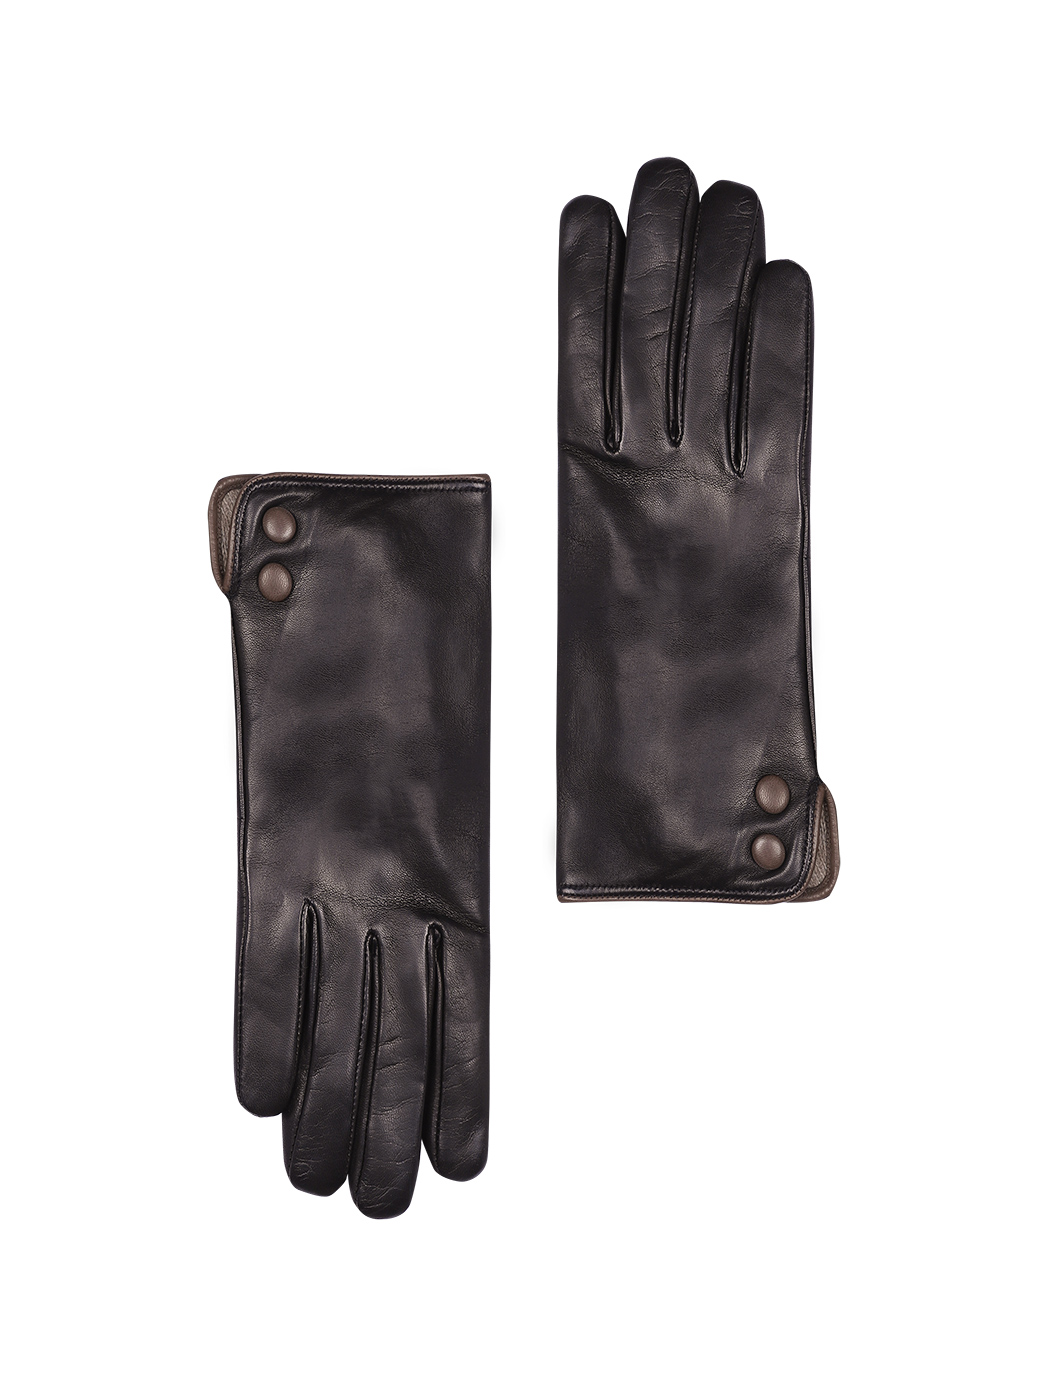 Кожаные перчатки черного цвета с пуговицами по бокам 